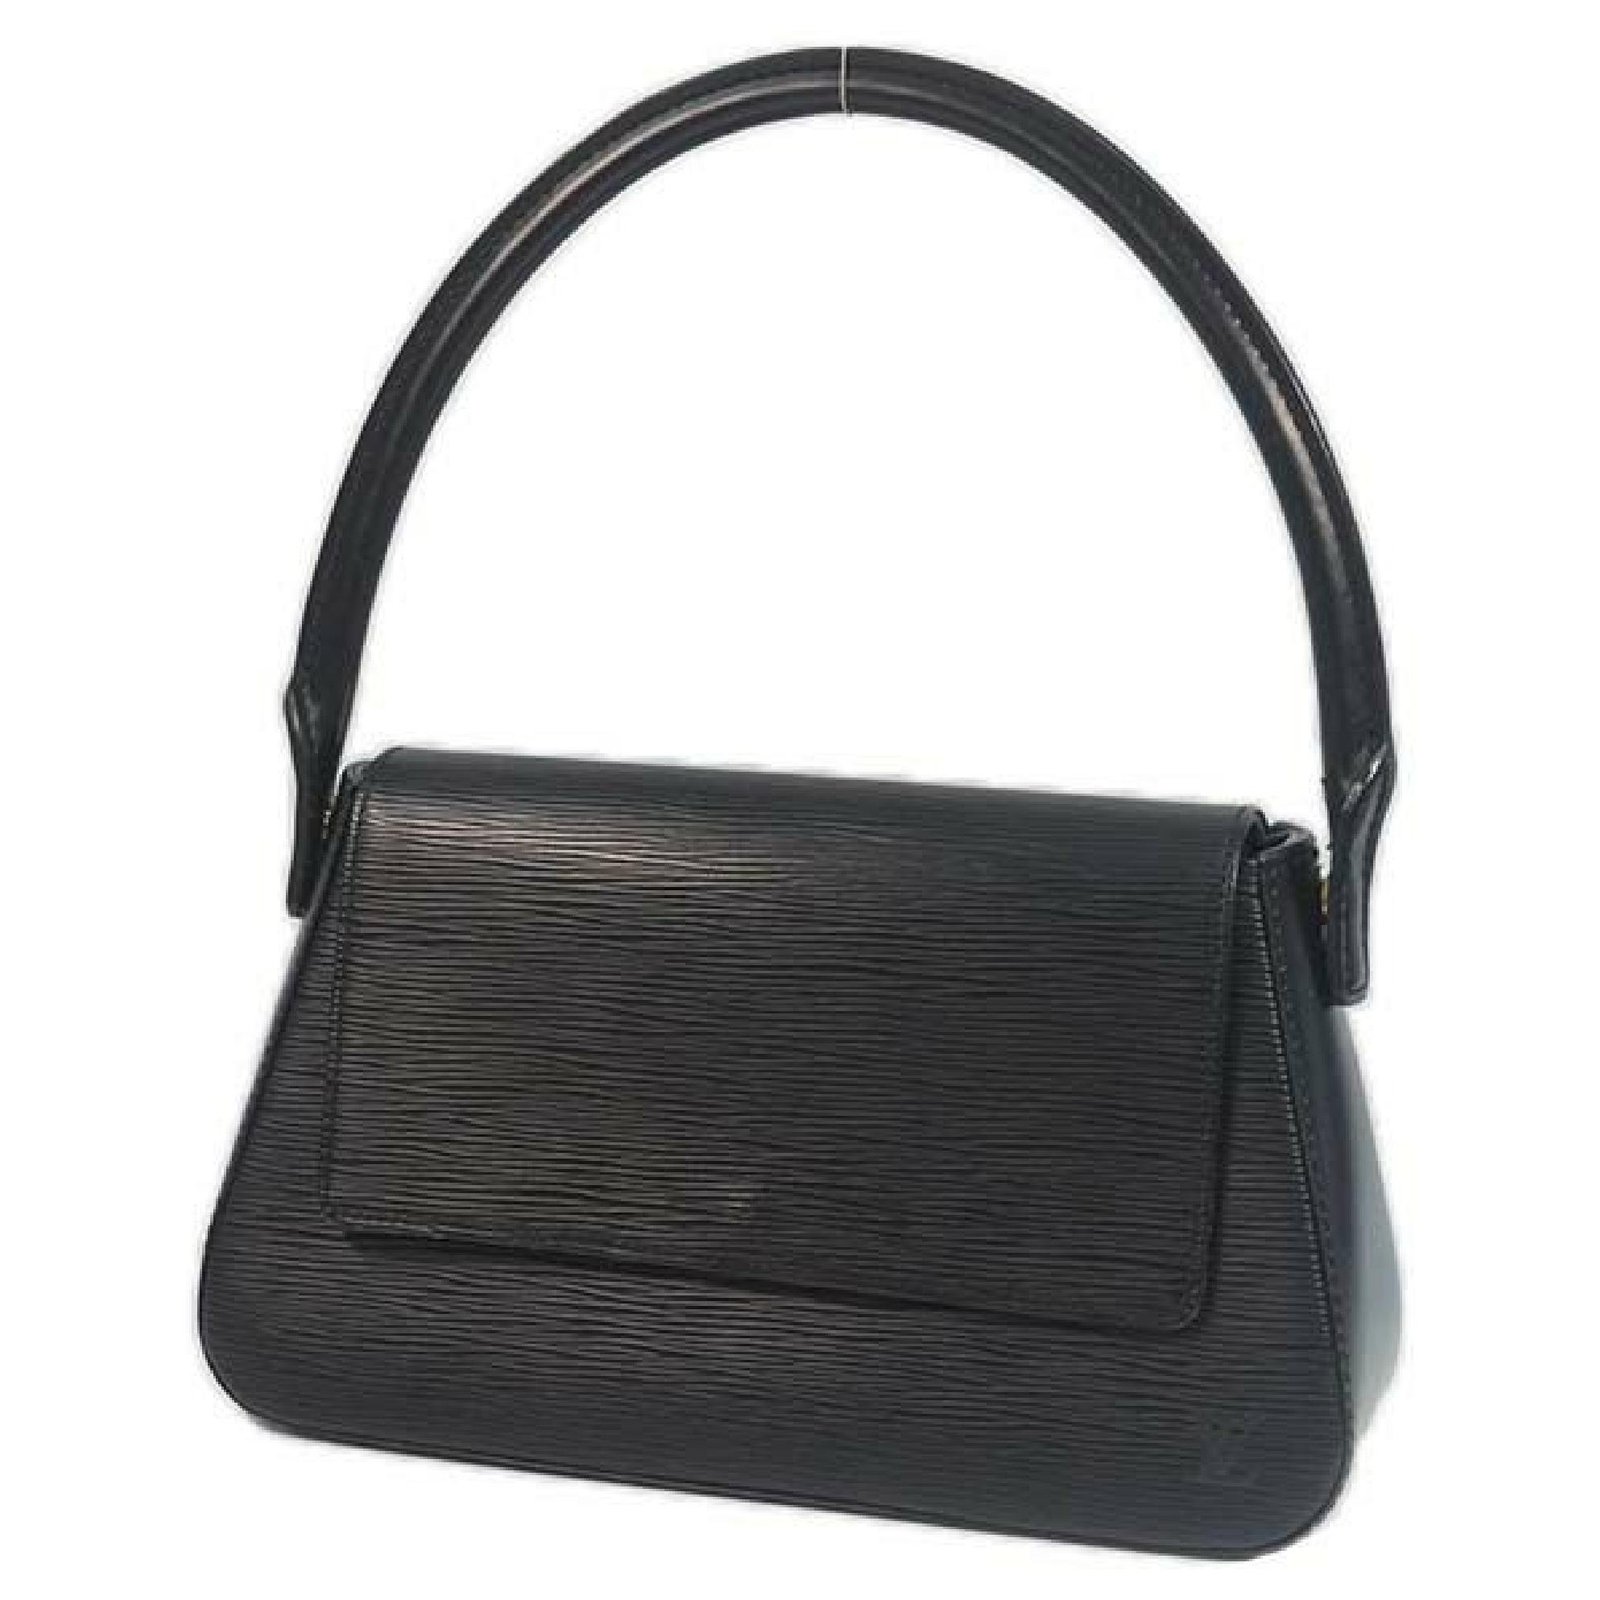 Louis Vuitton Black Epi Leather Nocturne Bag.  Luxury